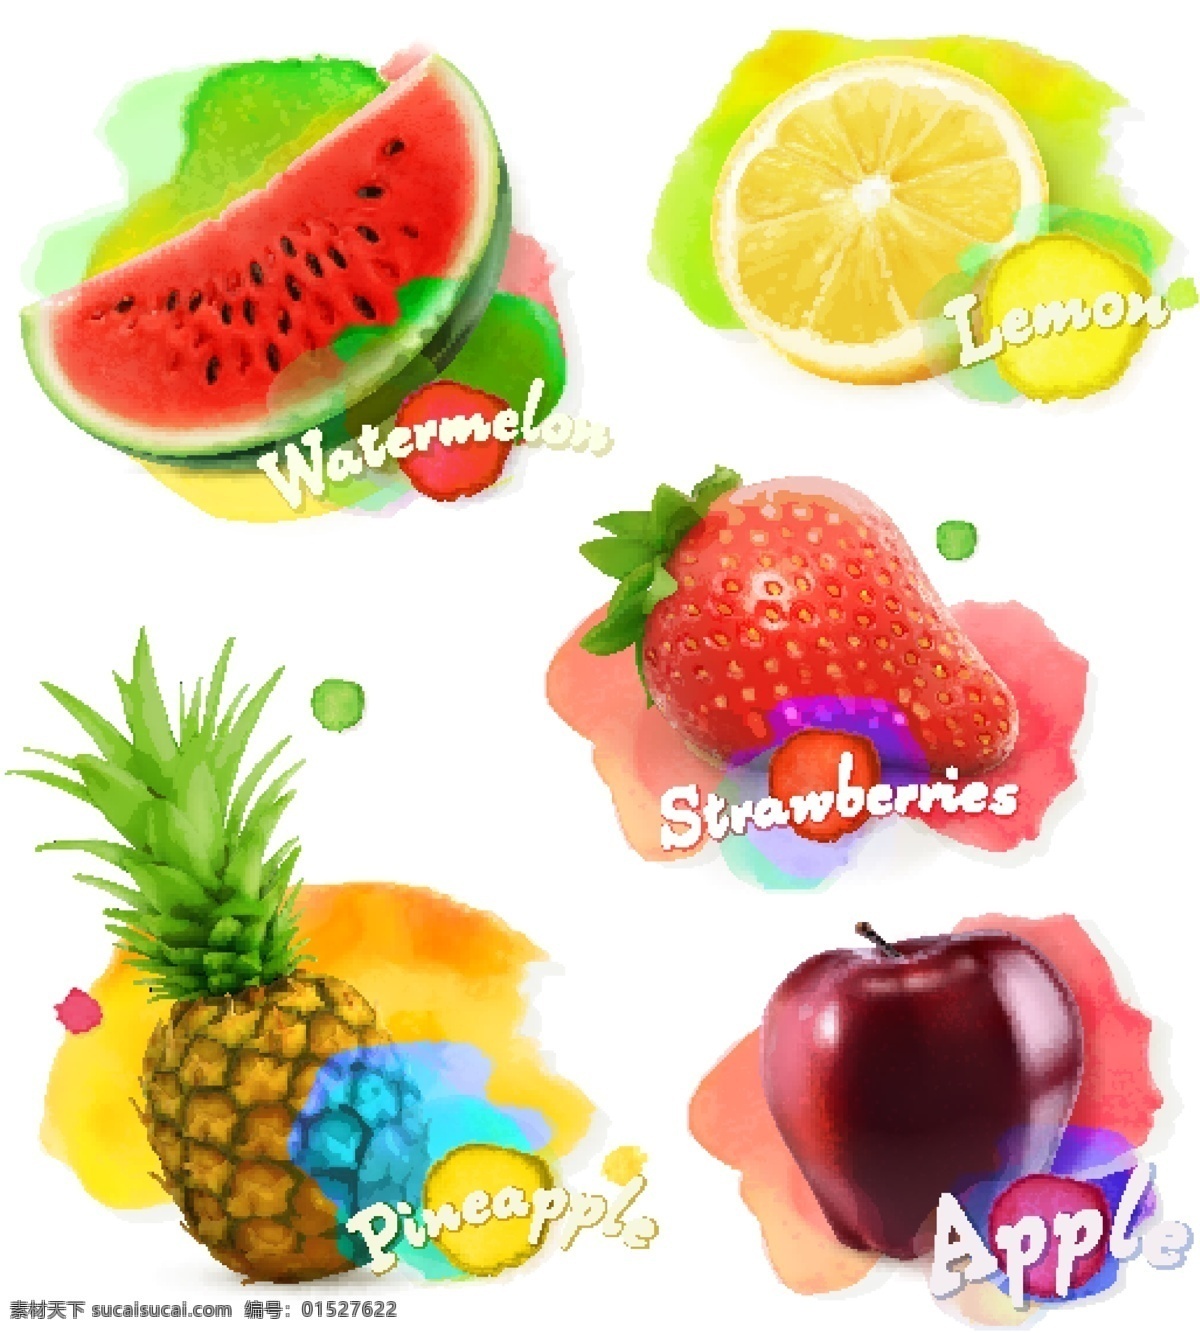 彩色 手绘 缤纷 水果 卡通 矢量 草莓 菠萝 矢量素材 设计素材 平面素材